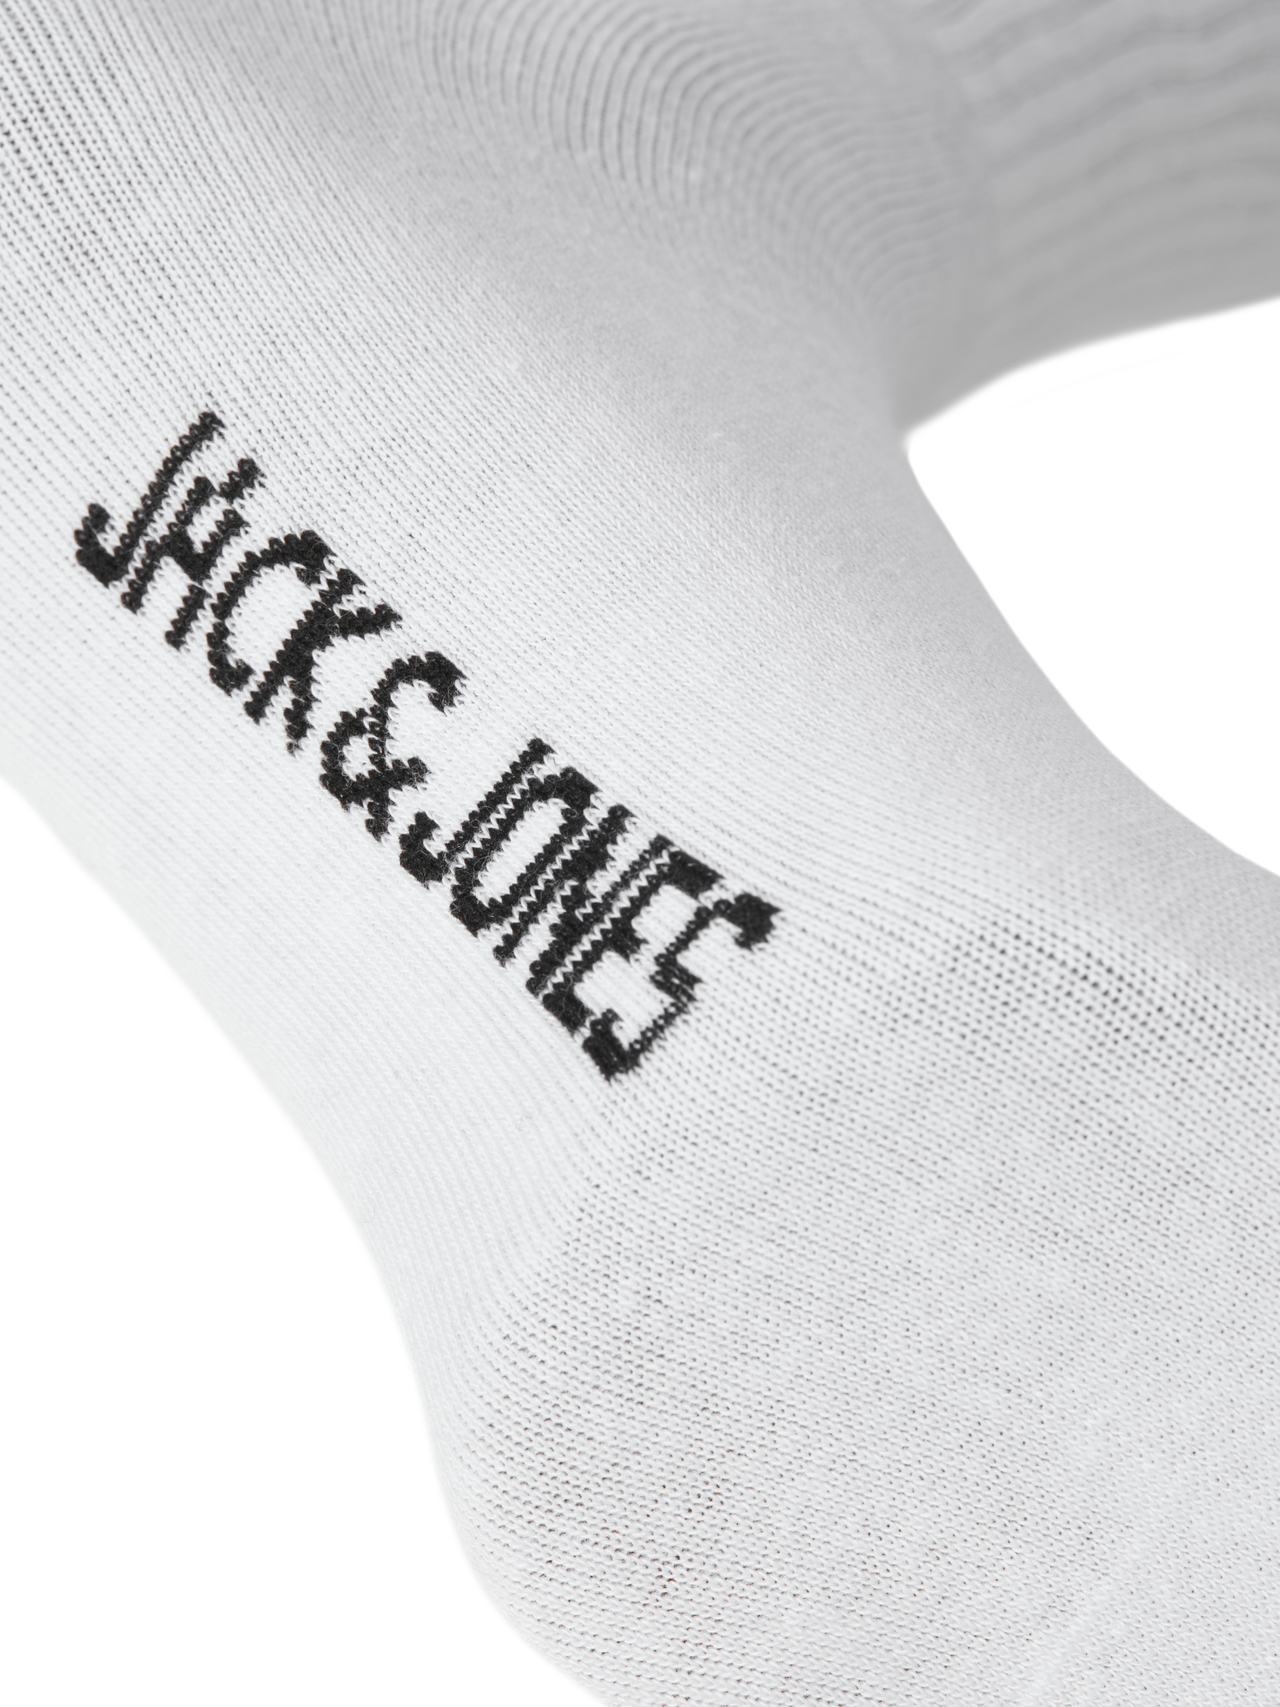 Jack & Jones Paquete de 3 Calcetines -White - 12260081